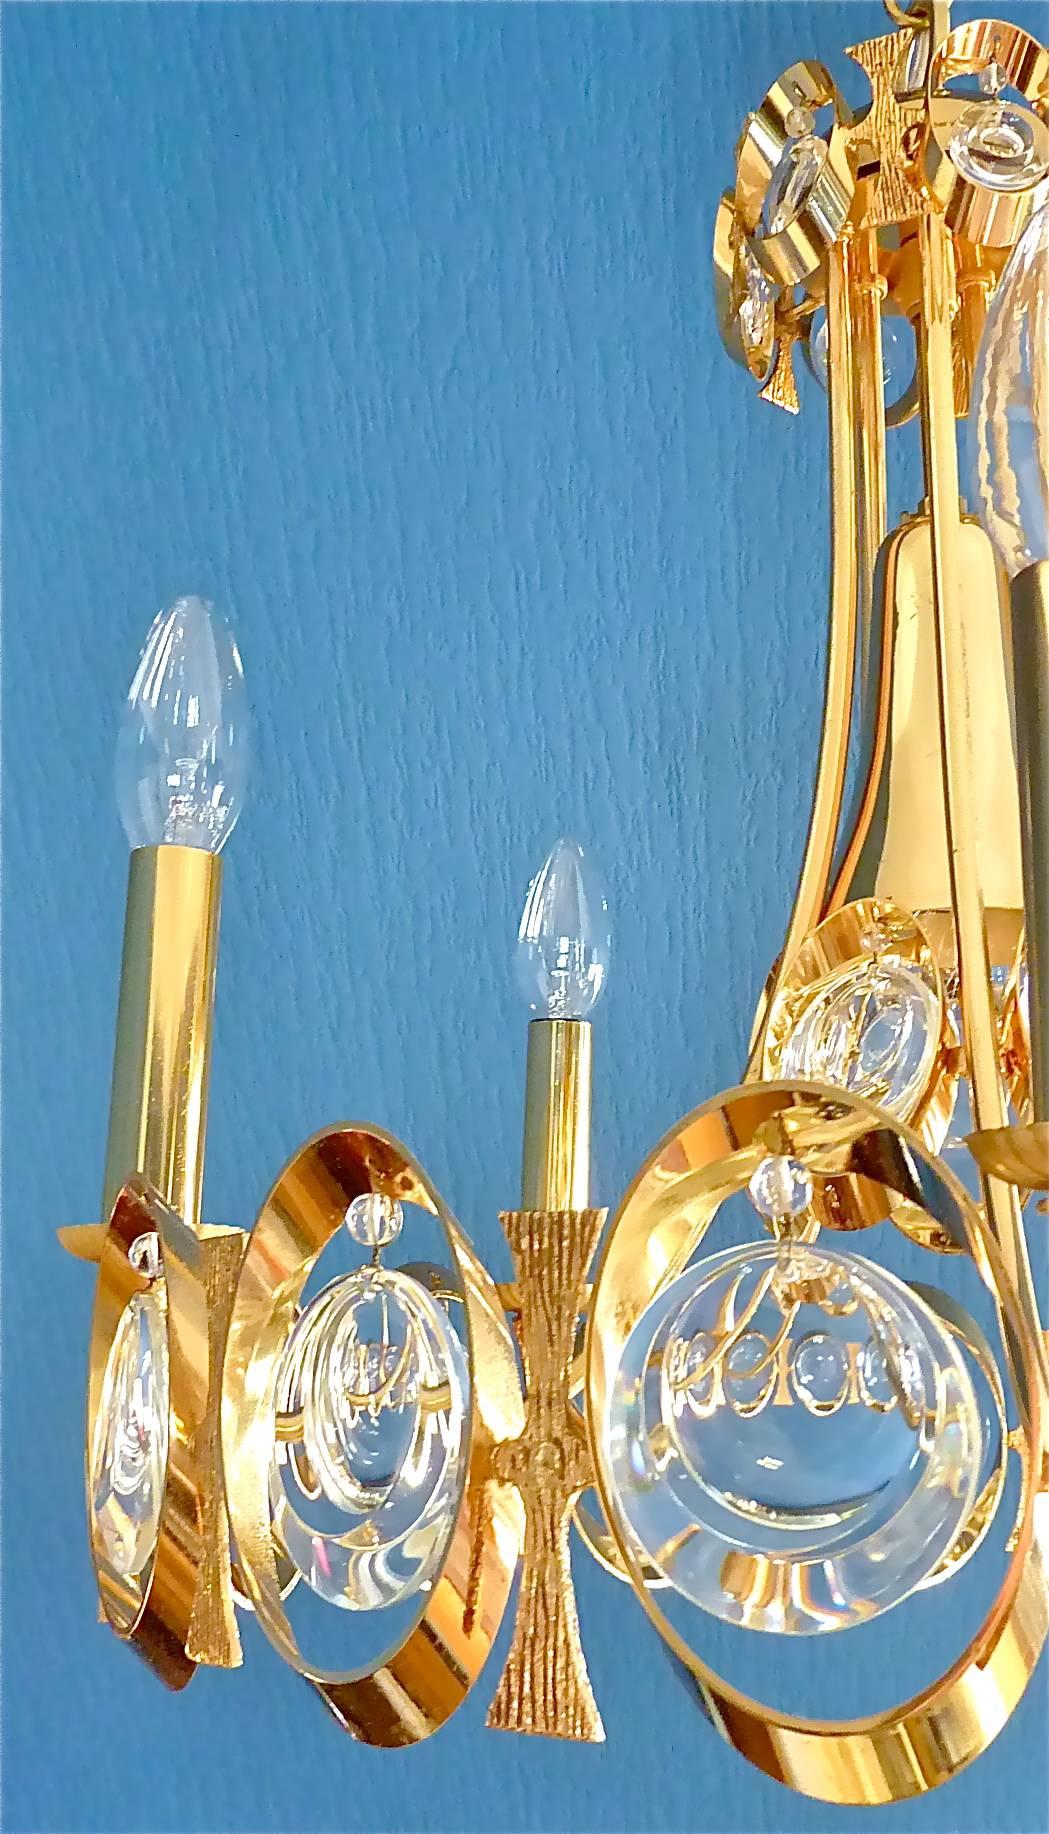 Großer und kostbarer Scheibenlüster aus Kristallglas, entworfen und hergestellt von Palwa, Deutschland, ca. 1960-1970. Die Deckenhalterung und der Rahmen sind aus vergoldetem Metall gefertigt. Der wunderschöne Midcentury-Kronleuchter hat eine Breite